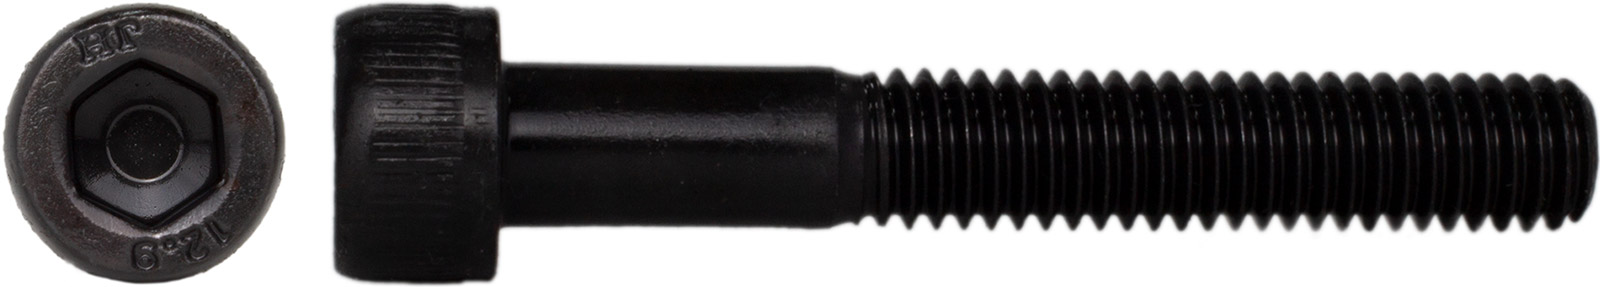 004754 Zylinder Schraube ISO 4762 NEU ANSCHÜTZ M5 x 25-10.9 